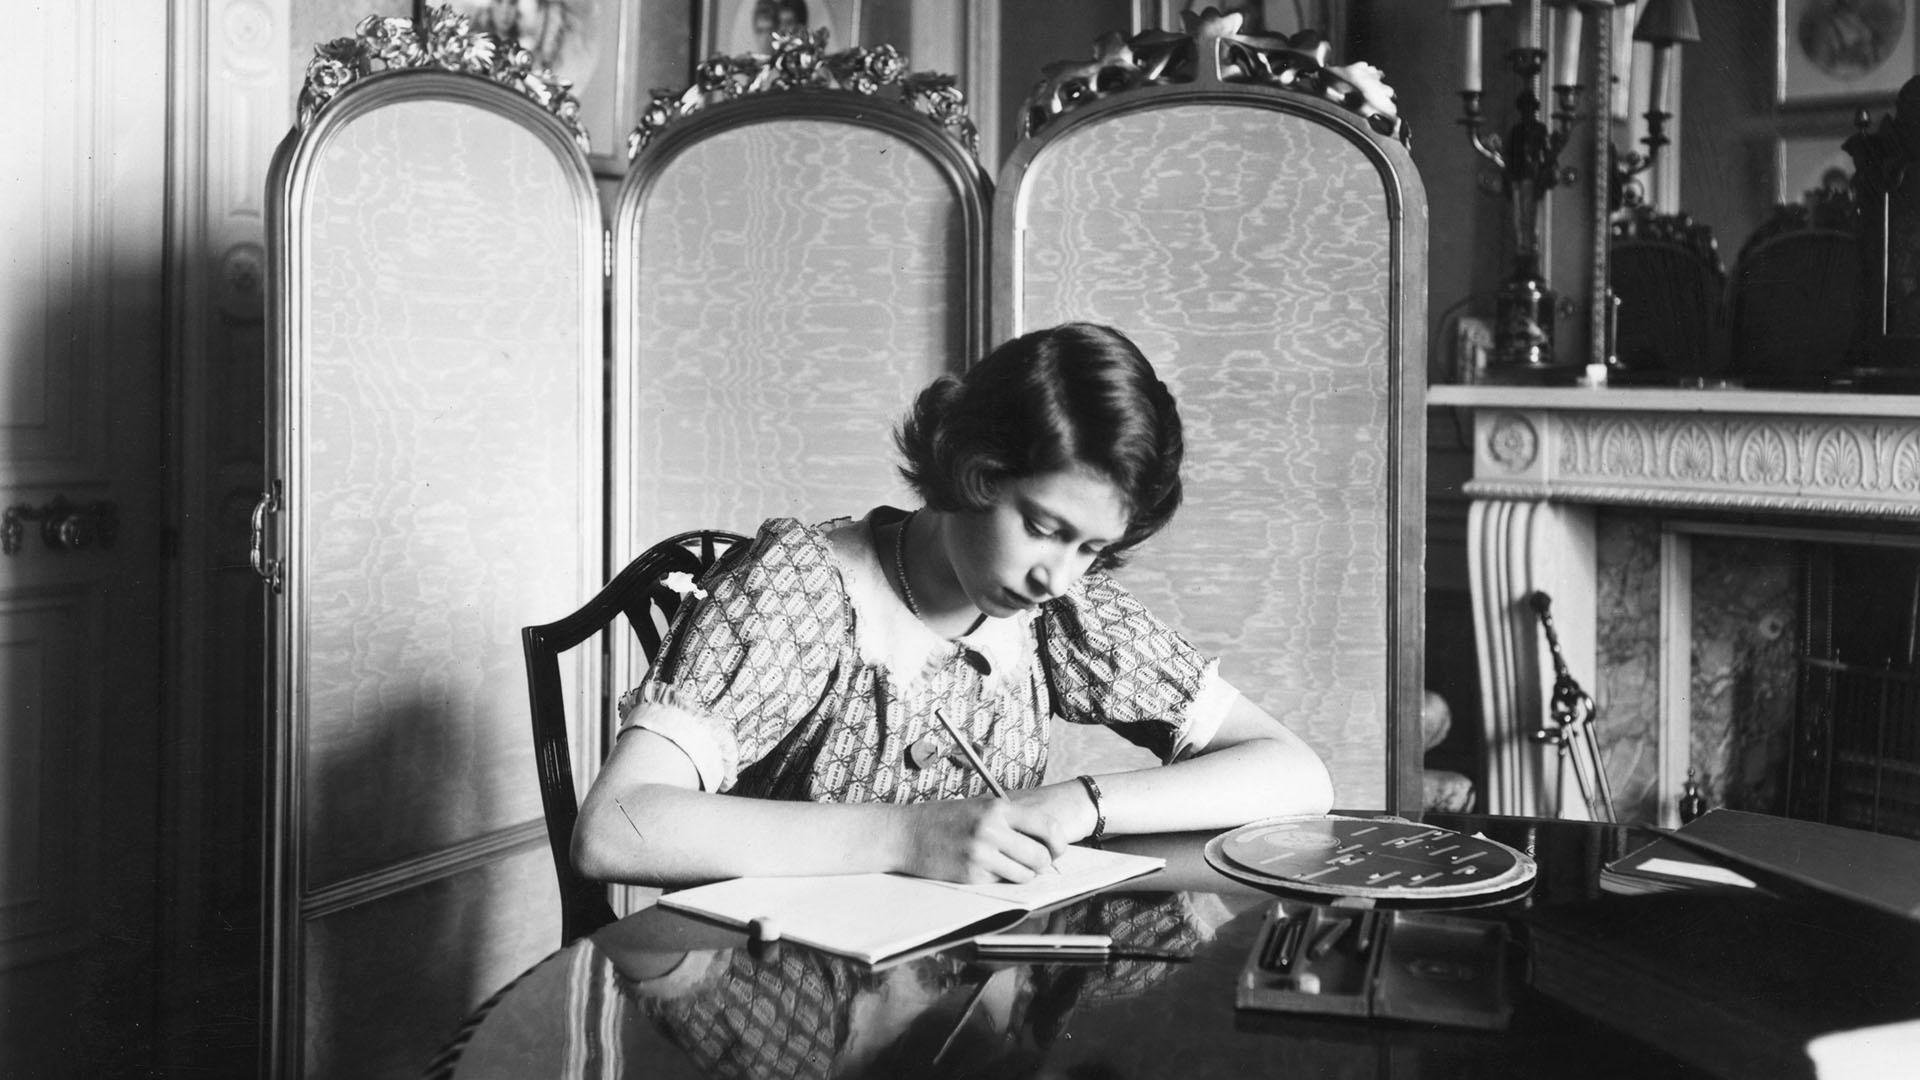 June 22, 1940: Princess Elizabeth working on her studies at a desk in Windsor Castle. 